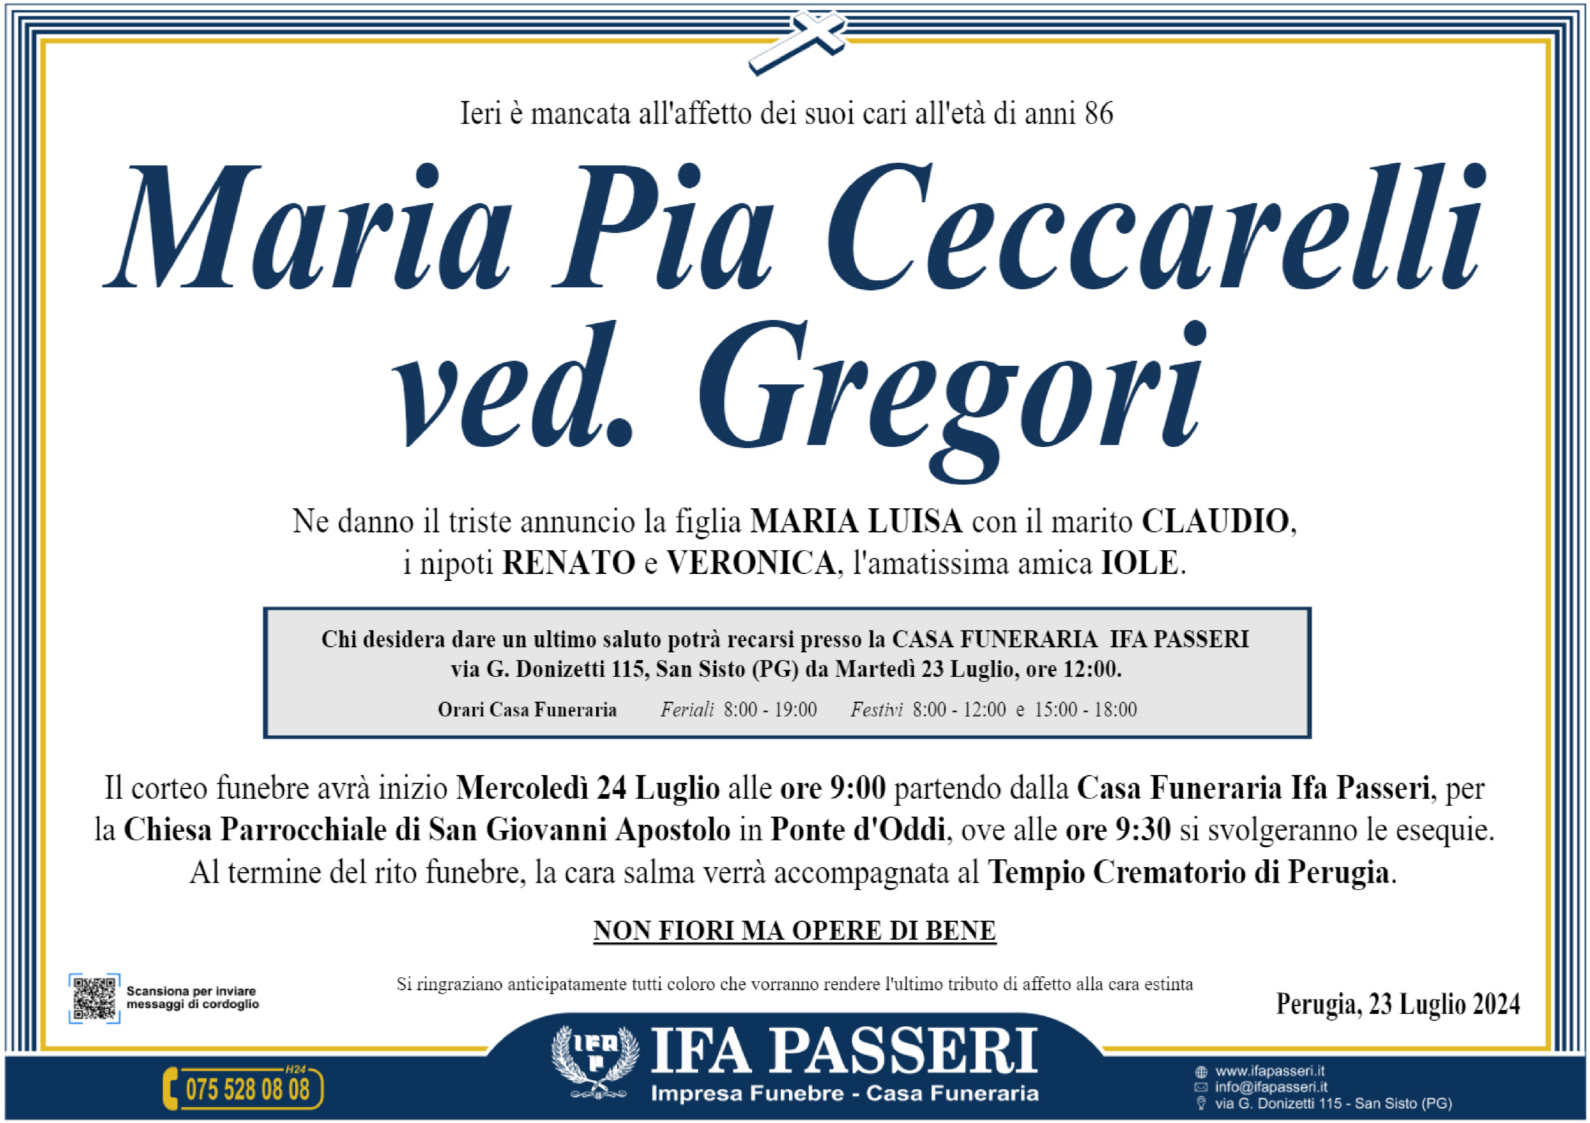 Maria Pia Ceccarelli ved. Gregori